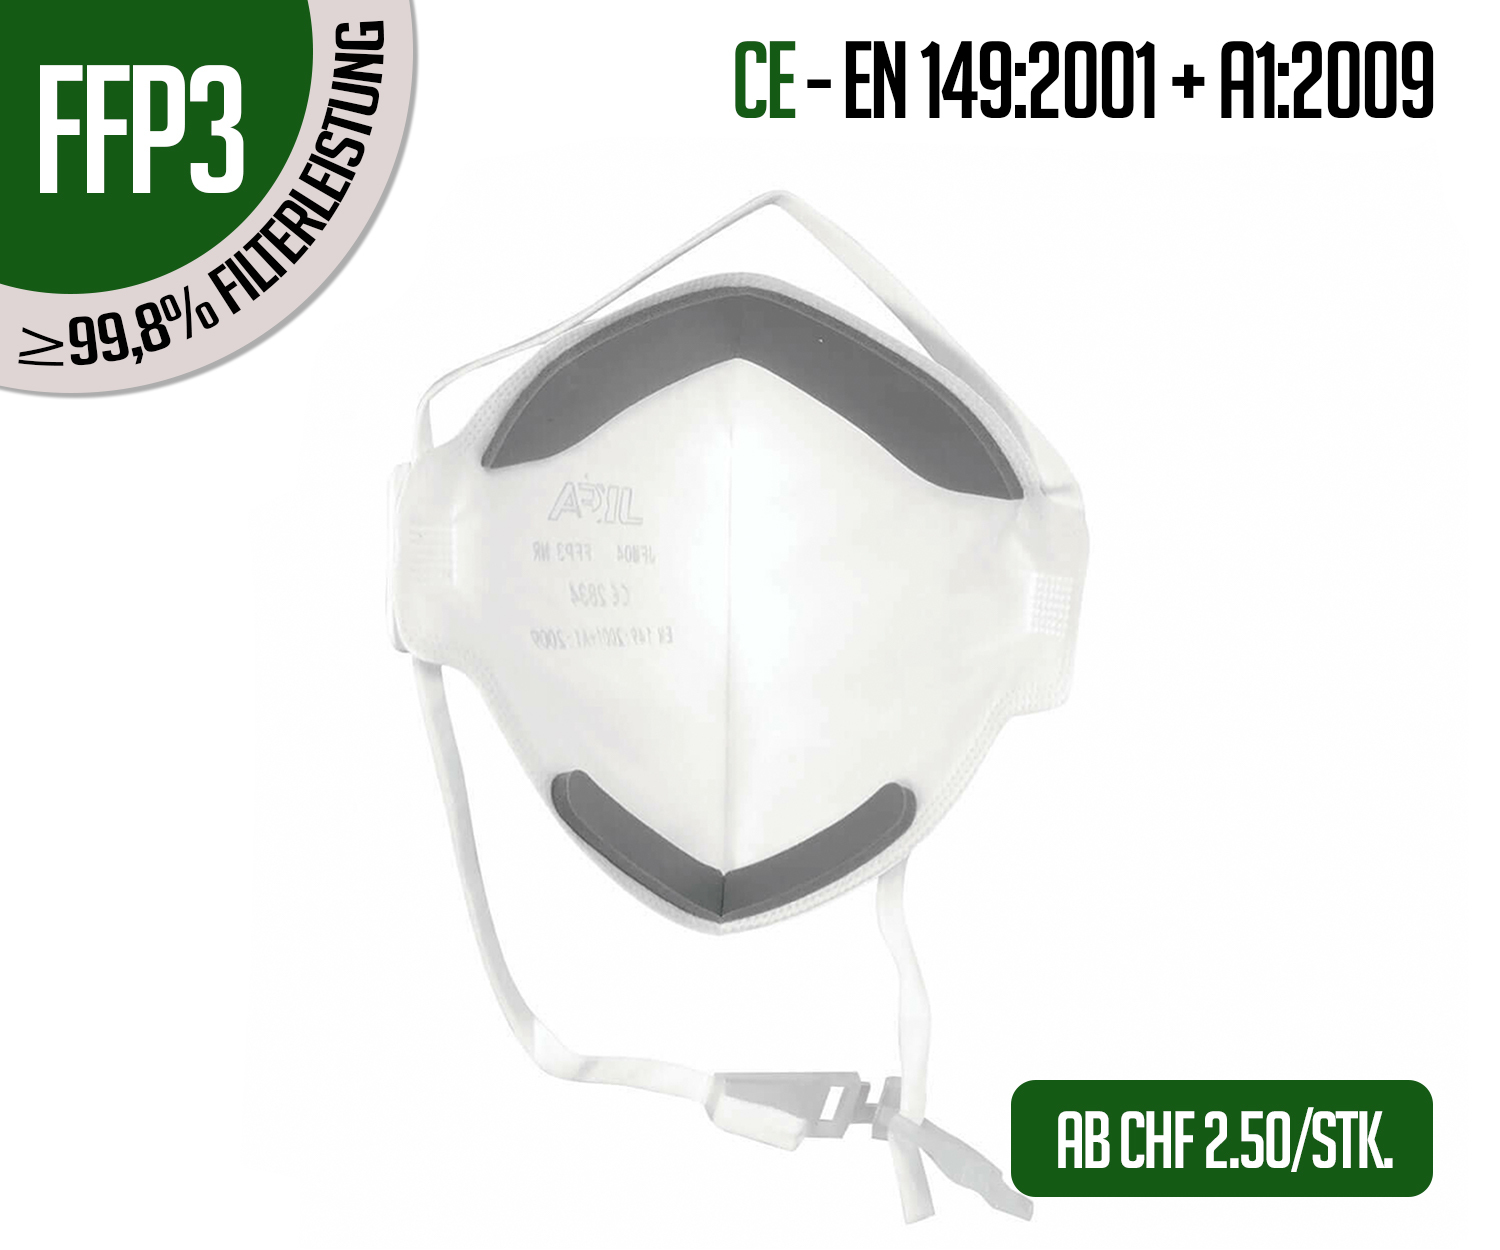 Schutzmasken kaufen | FFP2 Maskekaufen | Schutzmasken online Shop